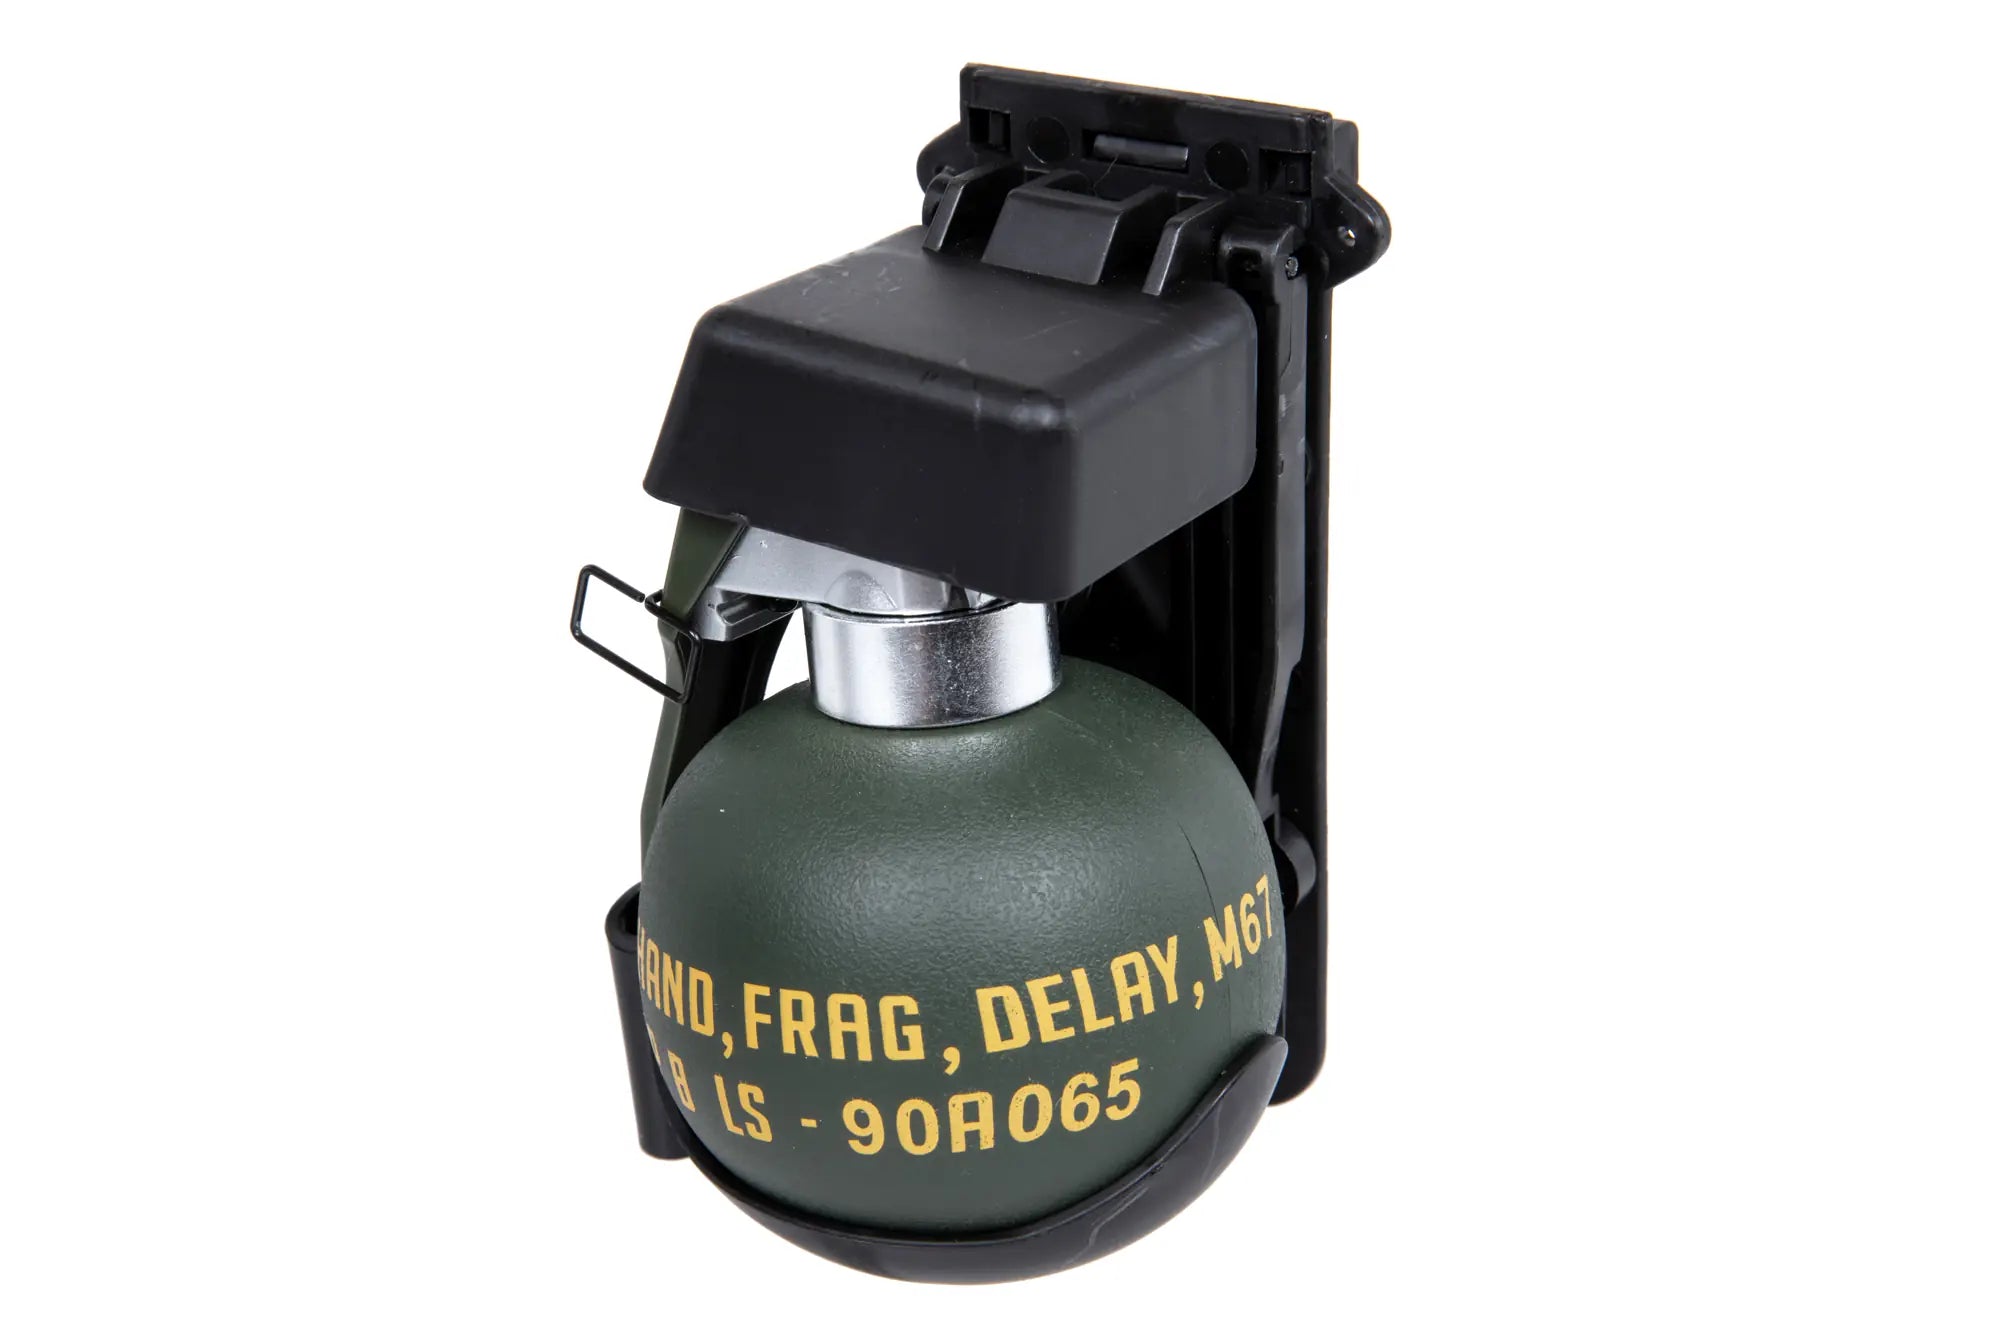 M67 fragmentation grenade dummy with loader Black